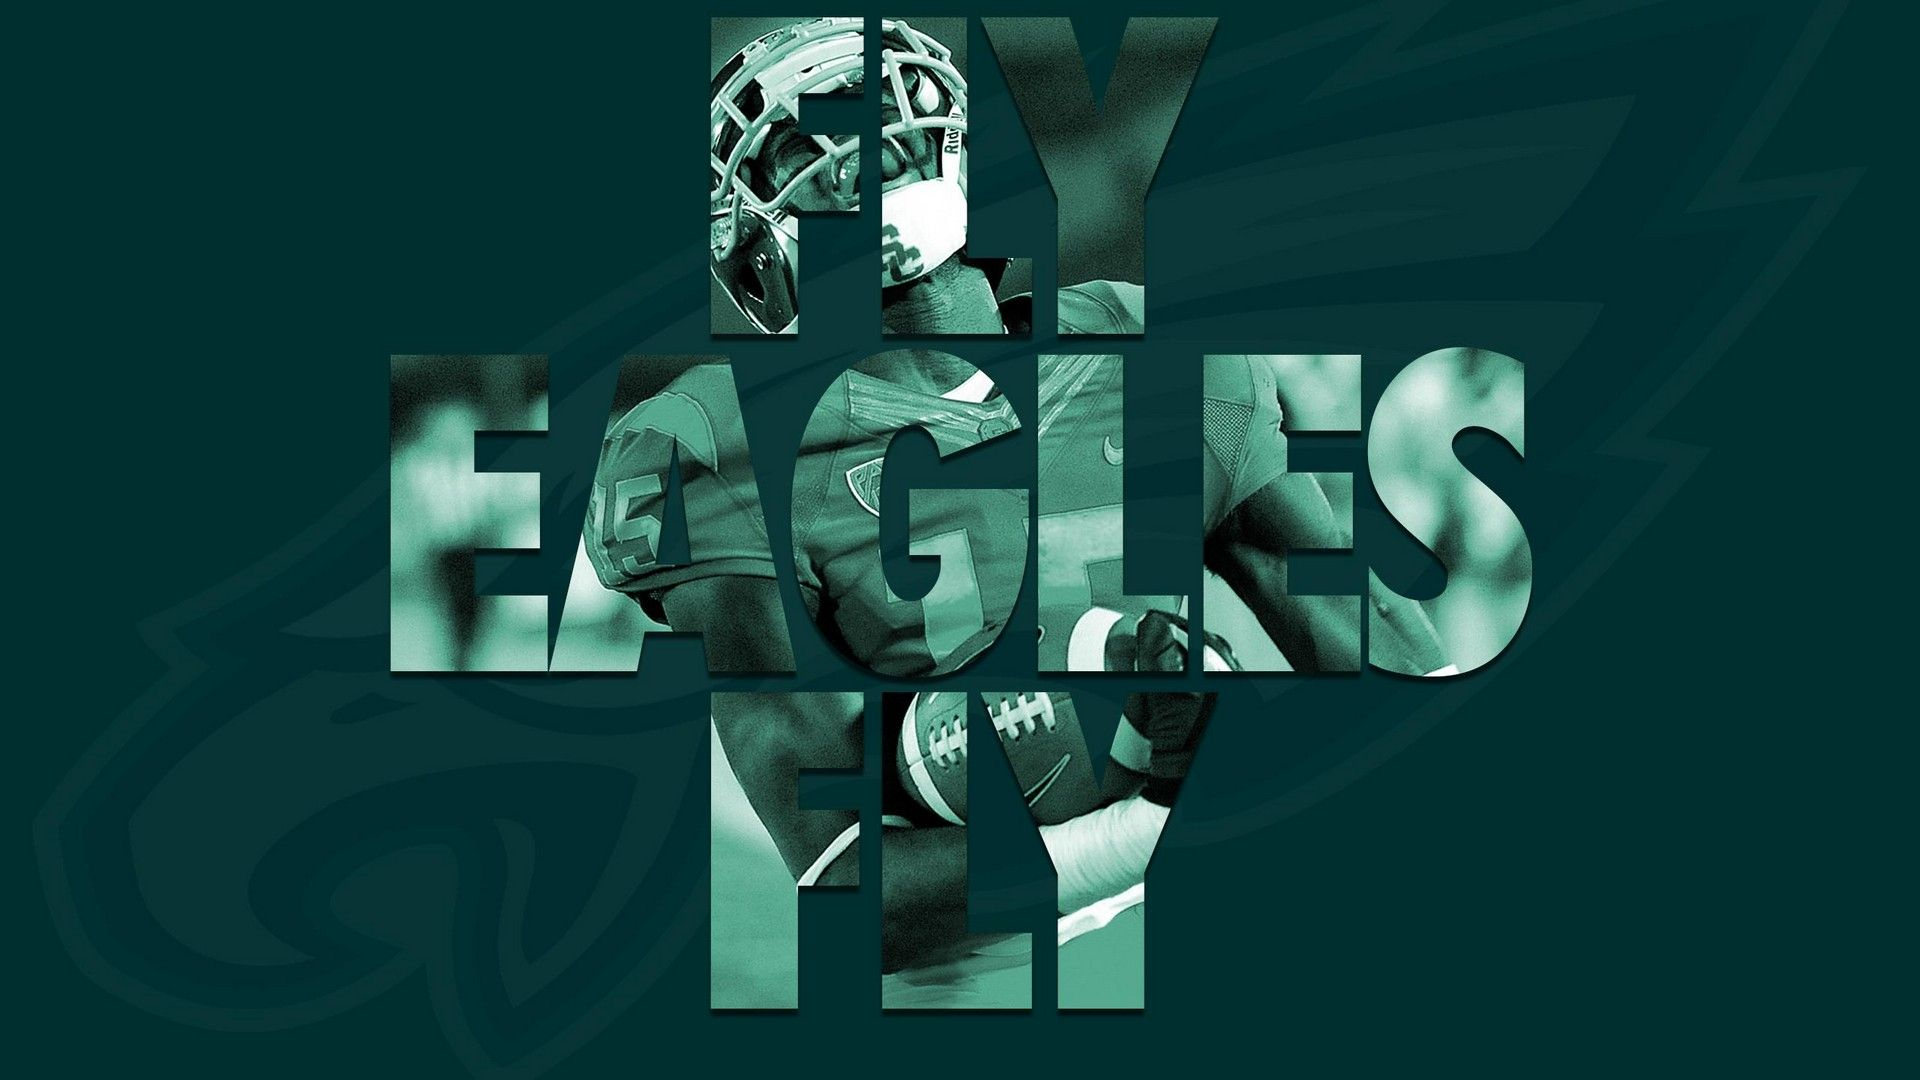 1920x1080 Eagles Desktop Wallpaper 2022 NFL Football Wallpapers | Philadelphia eagles wallpaper, Eagles, Wallpaper